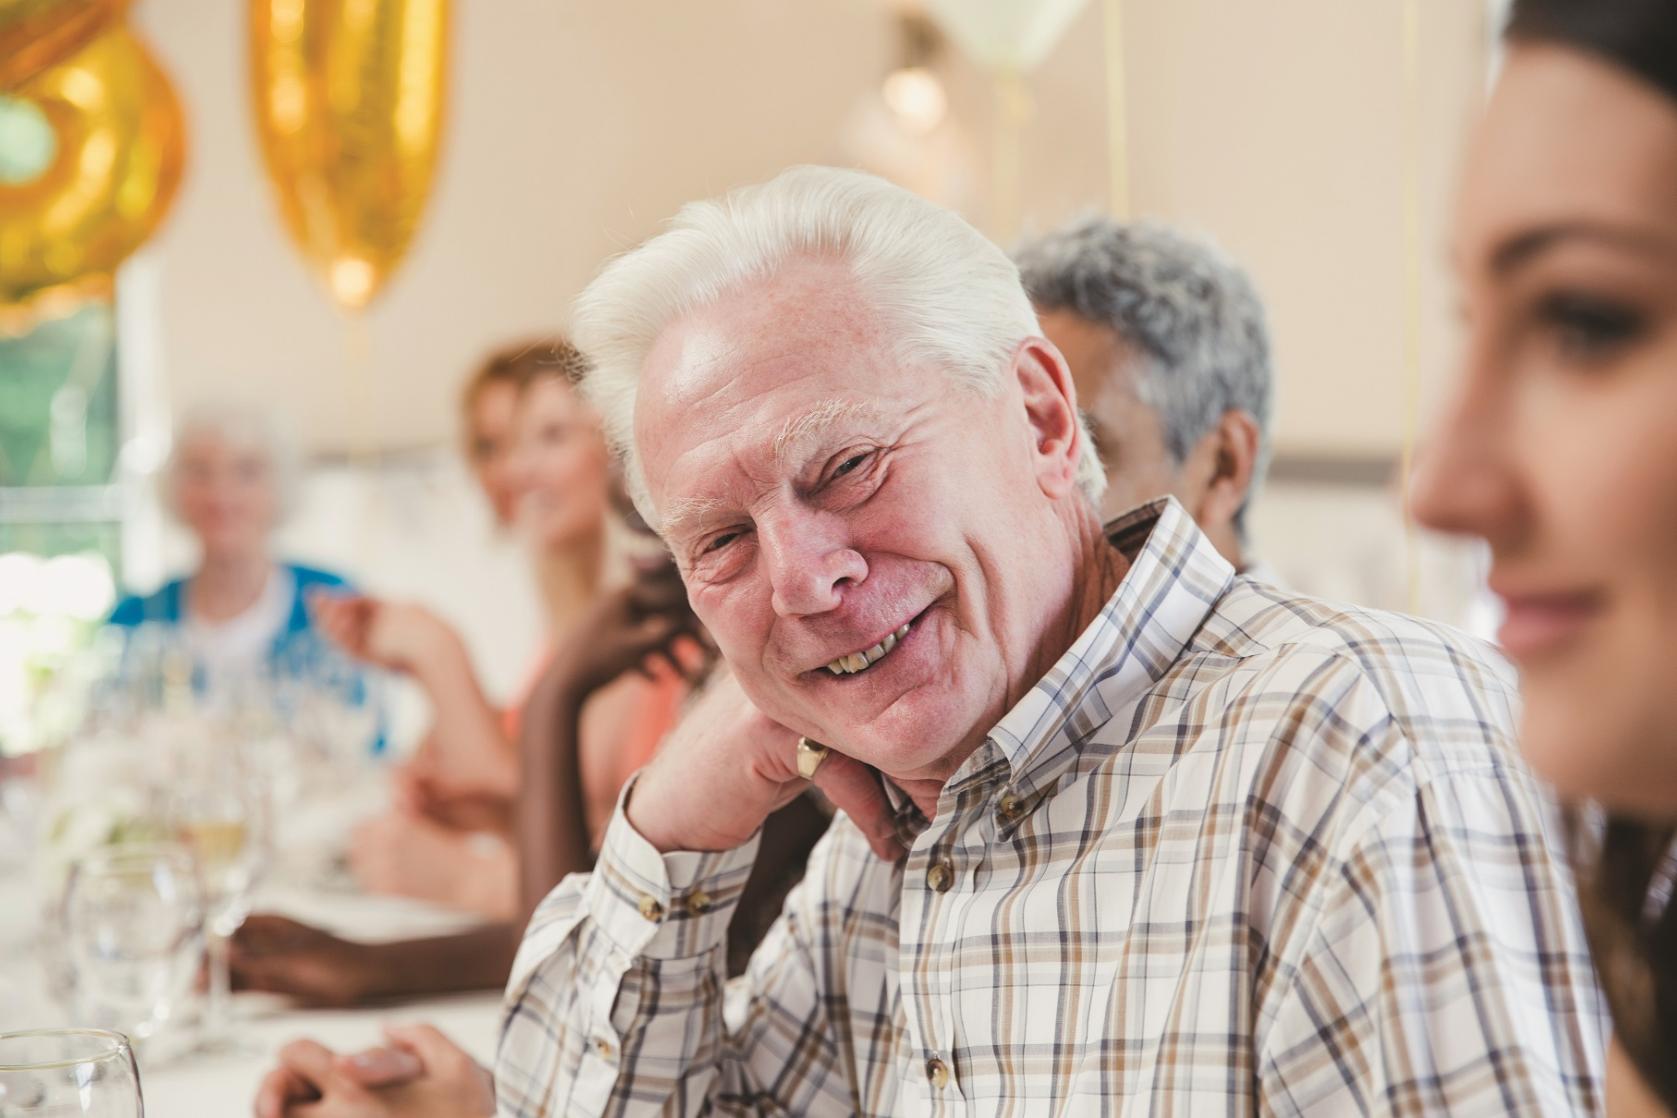 Older person celebration2